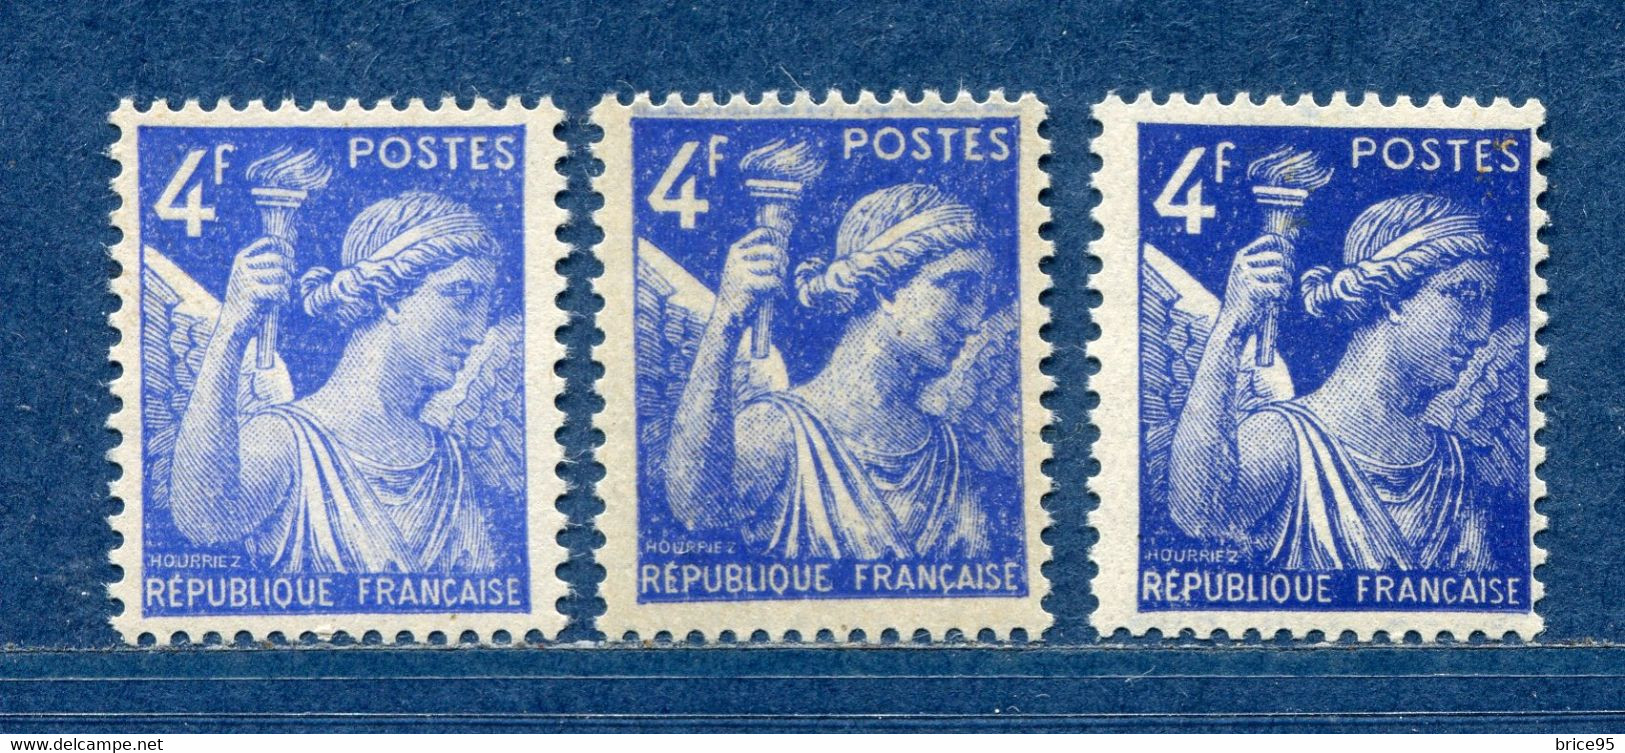 ⭐ France - Variété - YT N° 656 - Couleurs - Pétouilles - Neuf Sans Charnière - 1944 ⭐ - Nuevos